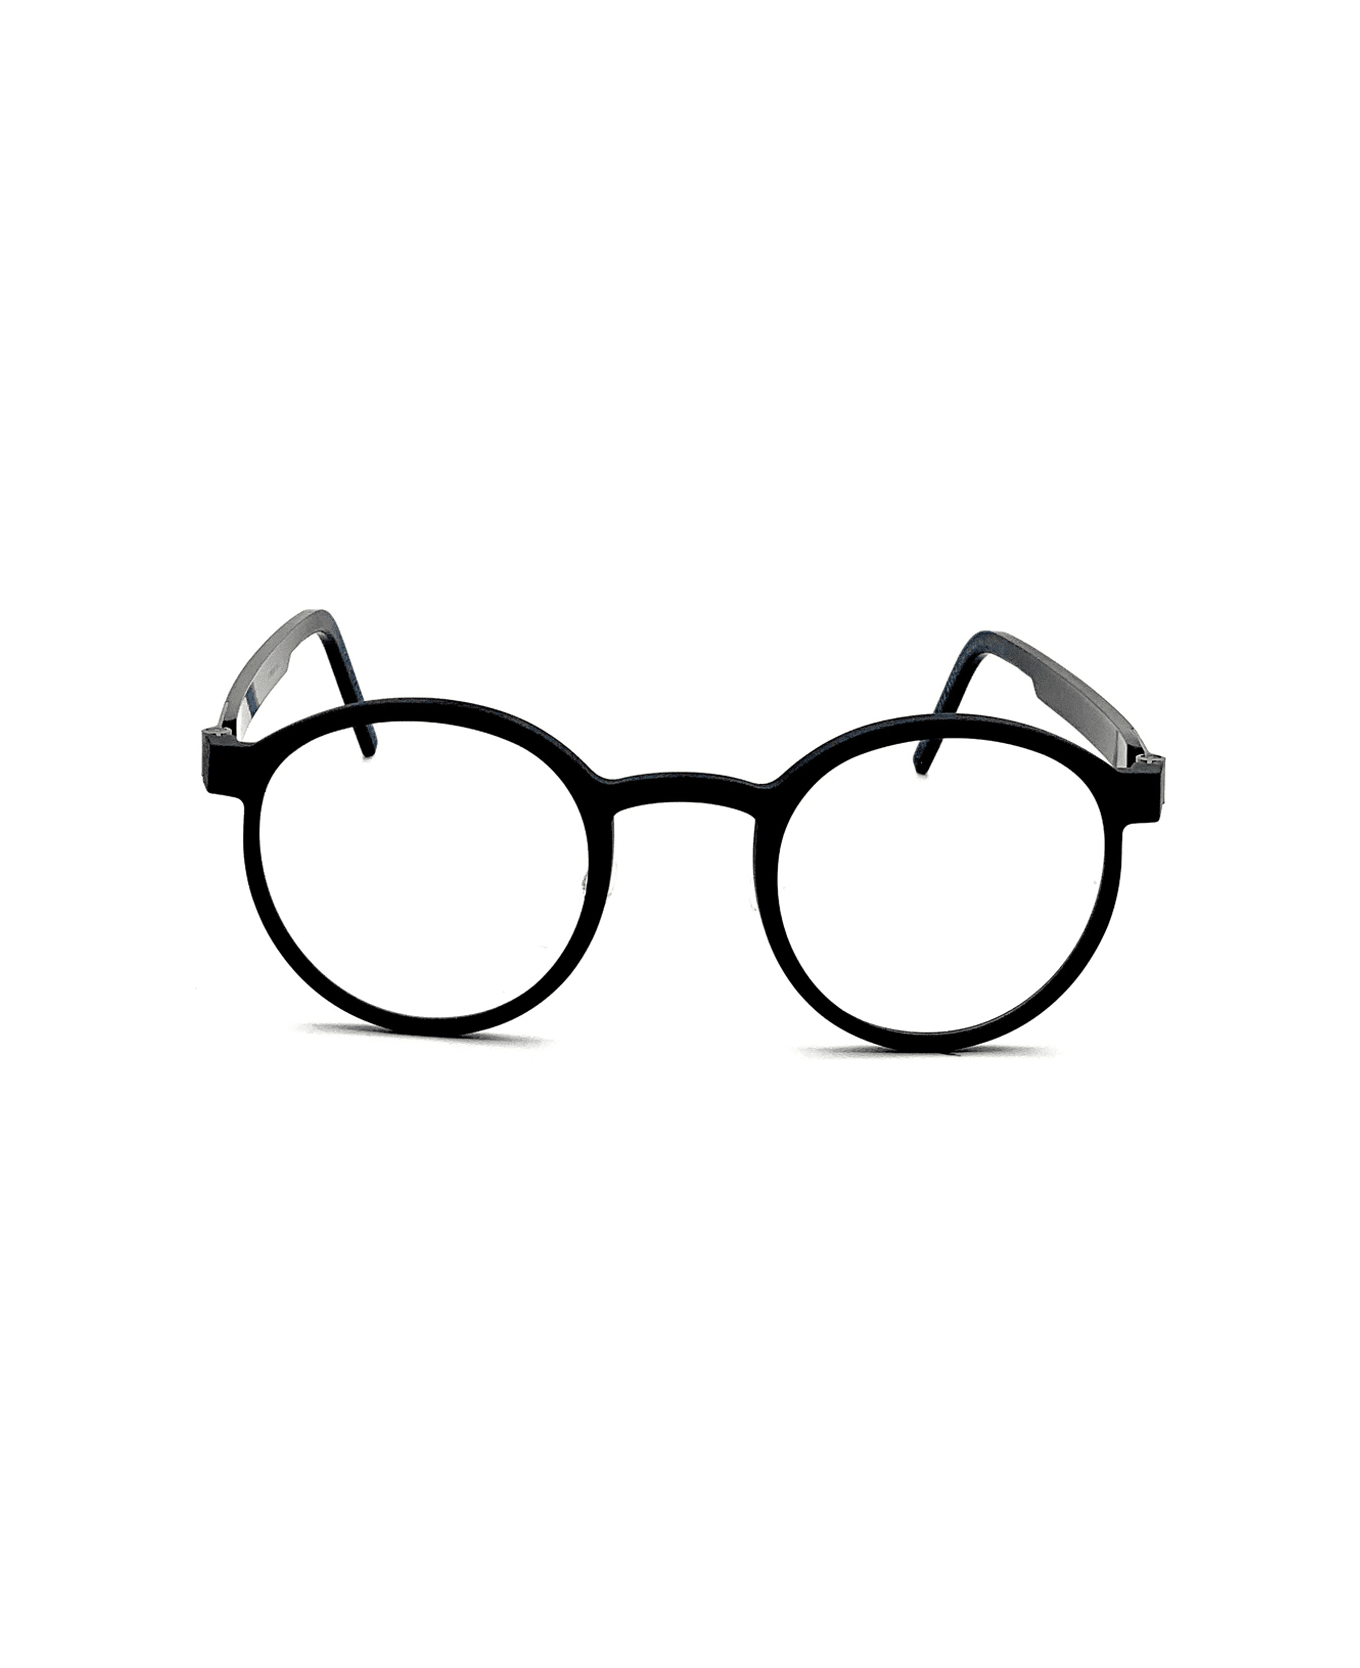 LINDBERG Acetanium 1014 Glasses - Nero